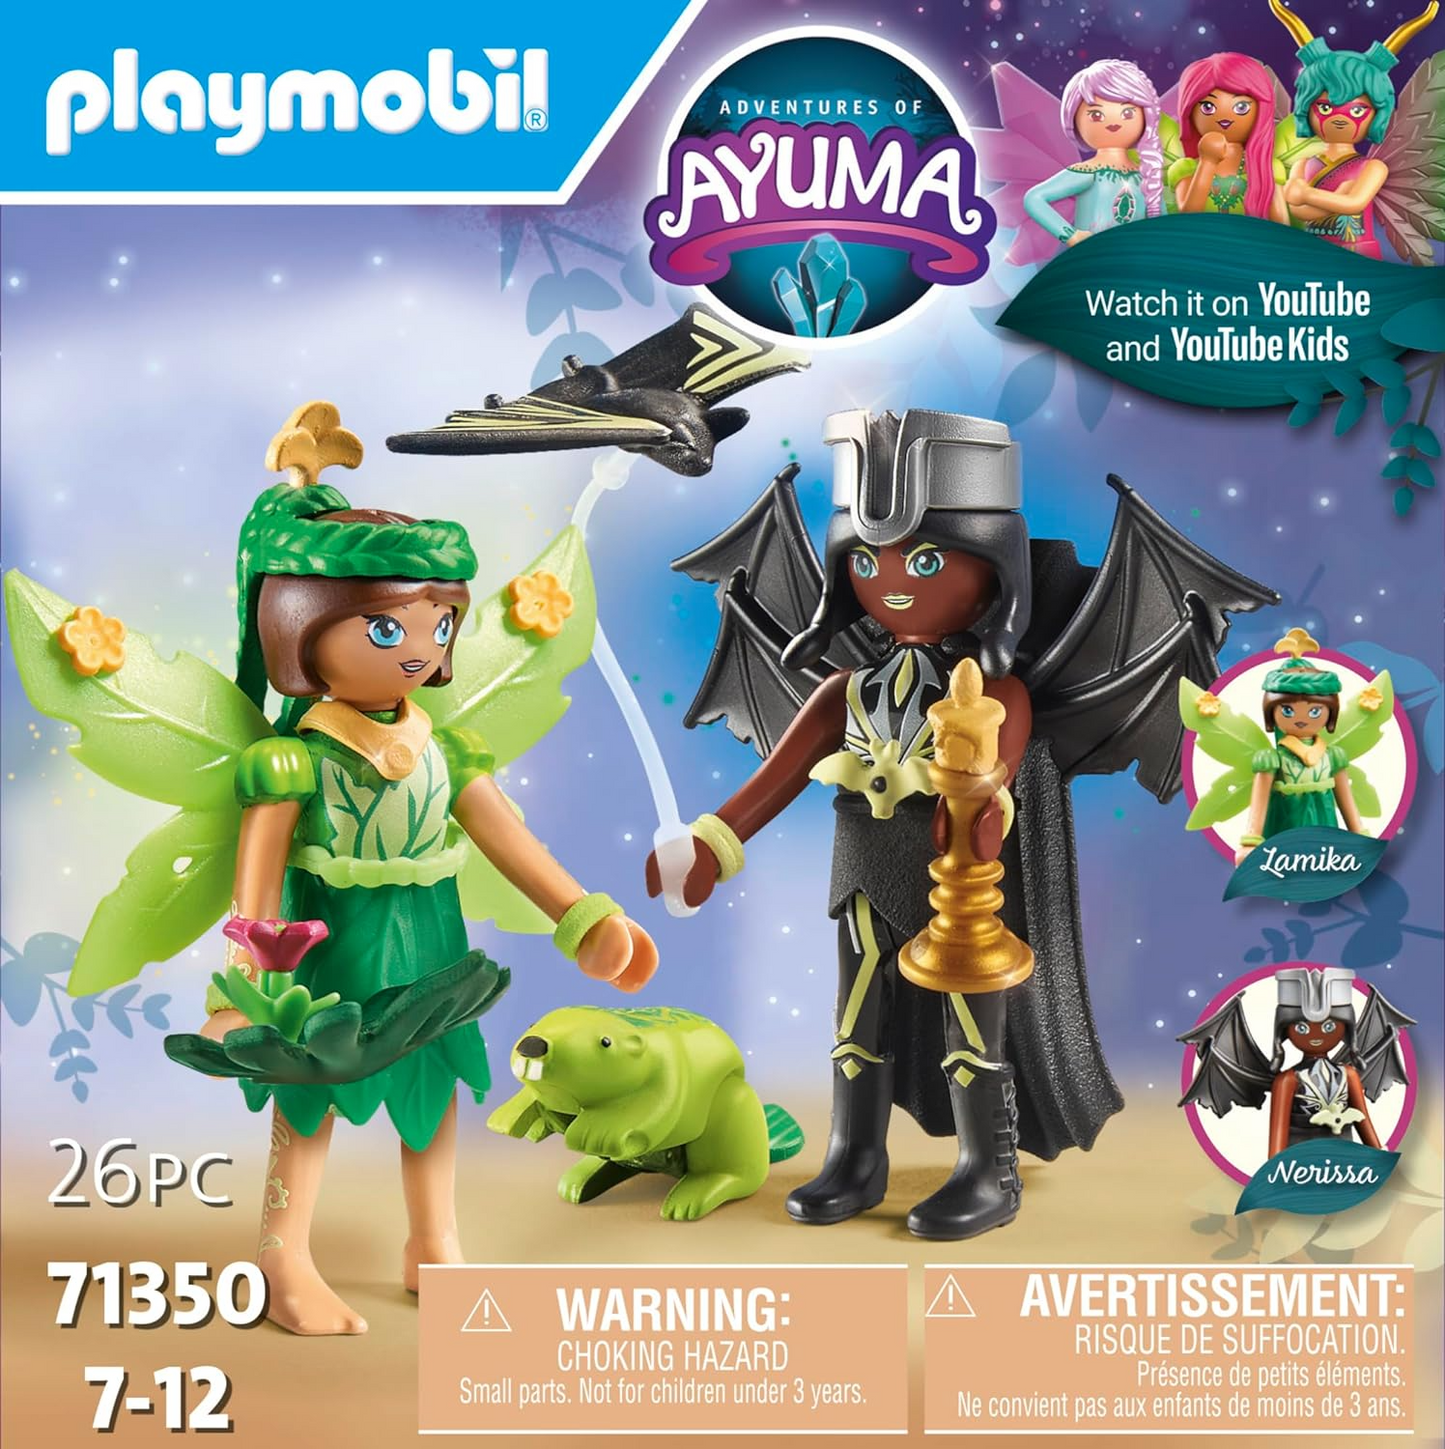 Playmobil 71350 Aventuras de Ayuma - Fada da Floresta e Fada do Morcego com Animais da Alma, floresta mística, fadas da lua e da alma, encenação divertida e imaginativa, conjuntos de jogos adequados para crianças de 7 anos ou mais